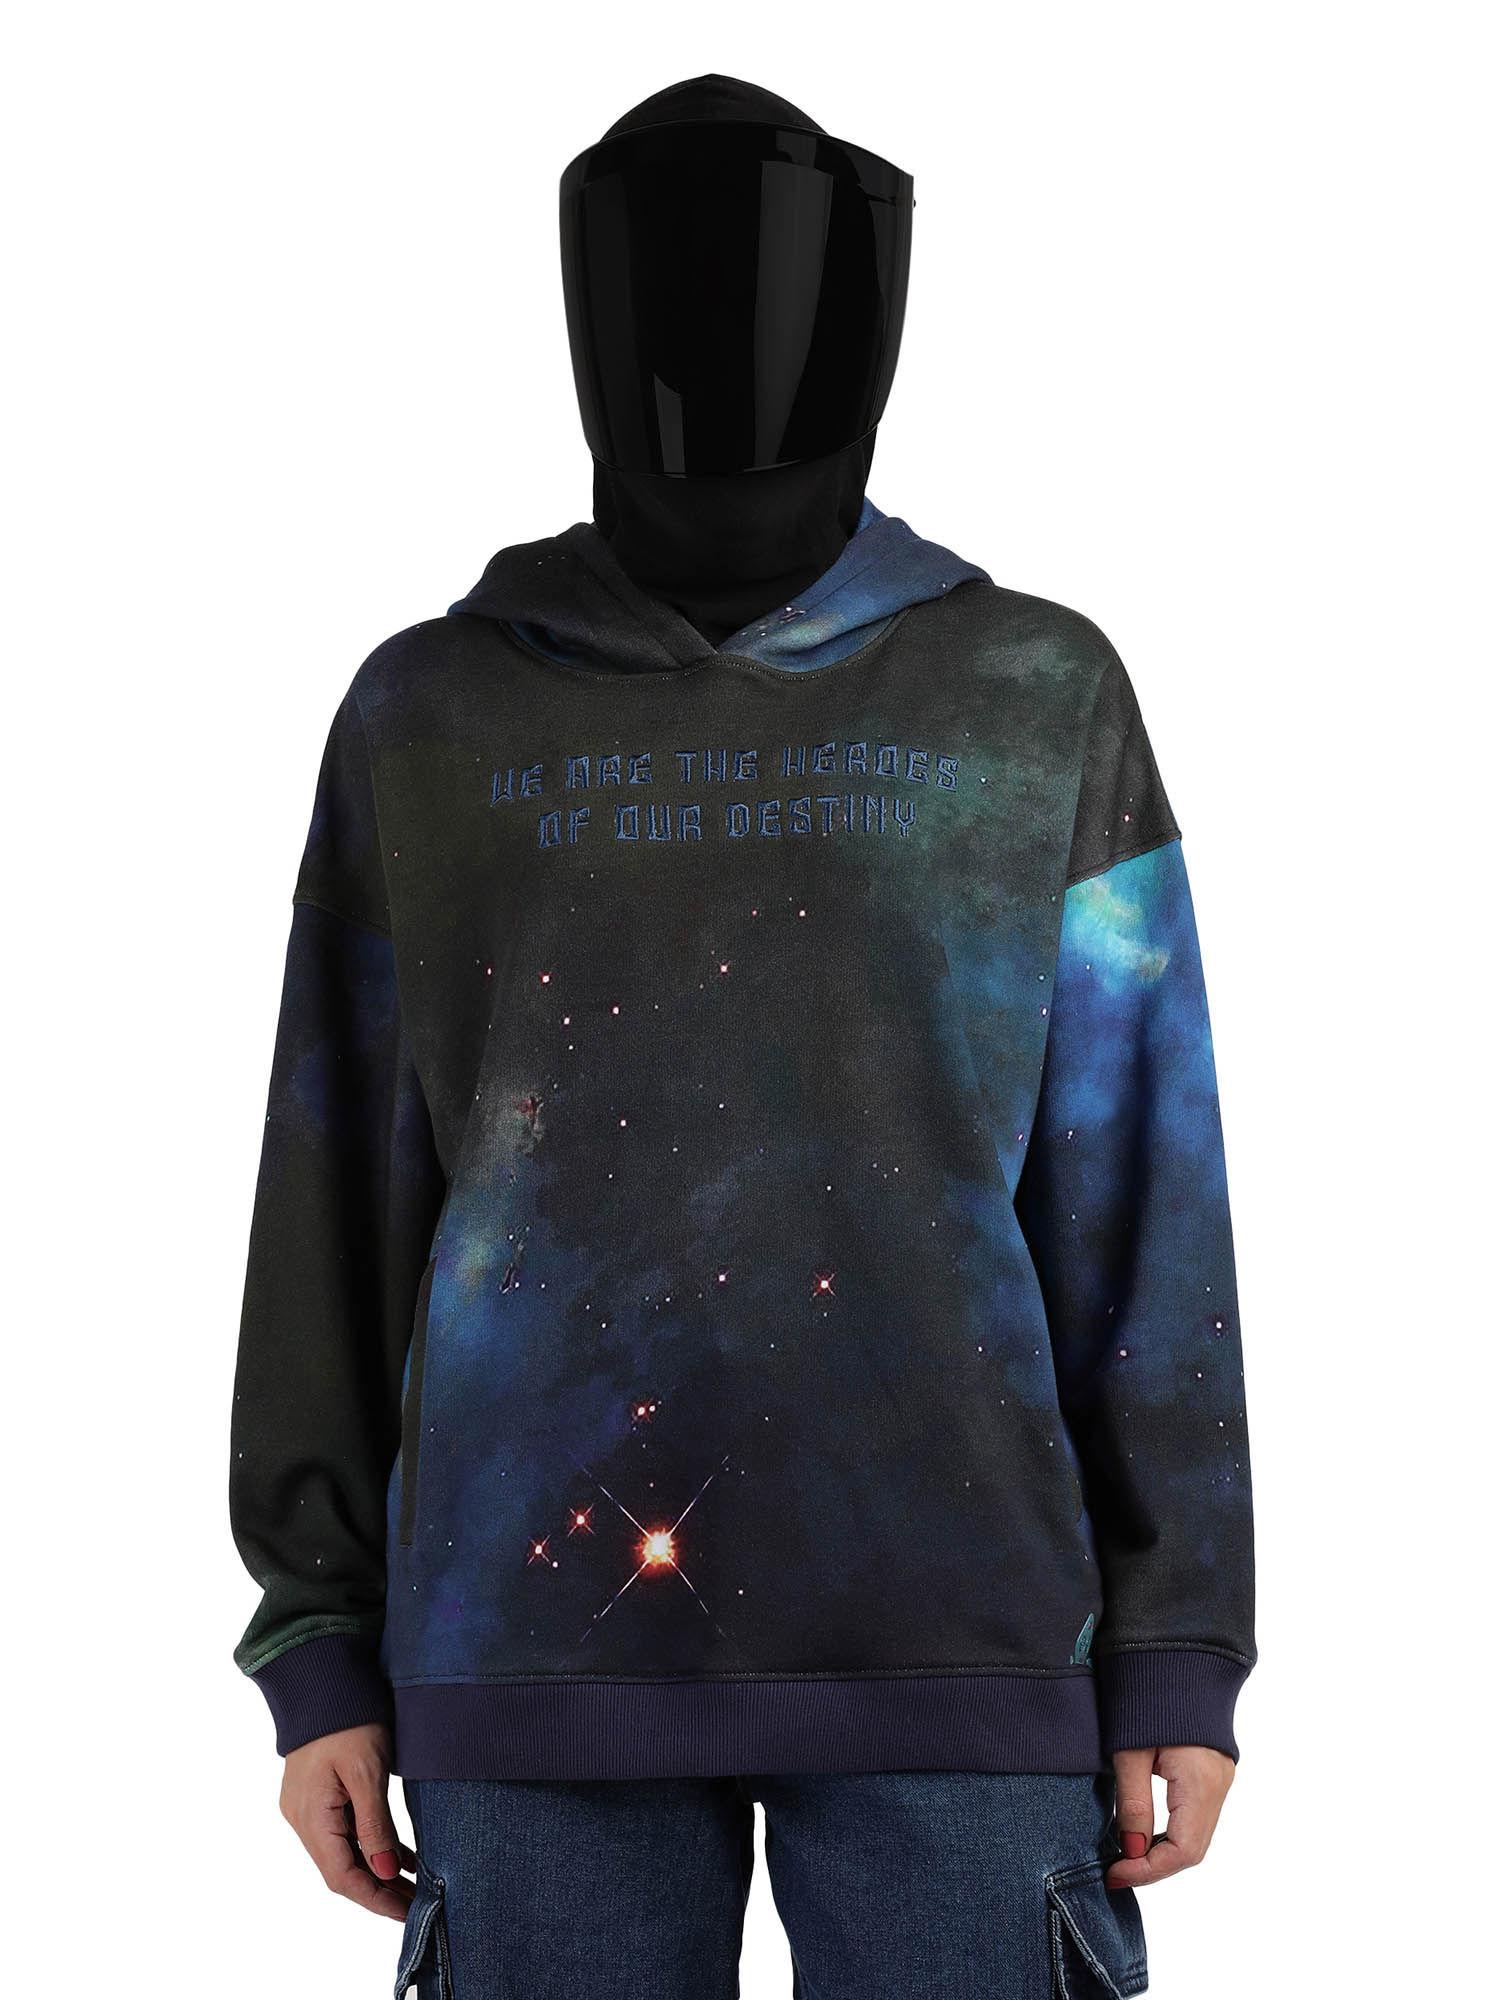 digital printed unisex hoodie